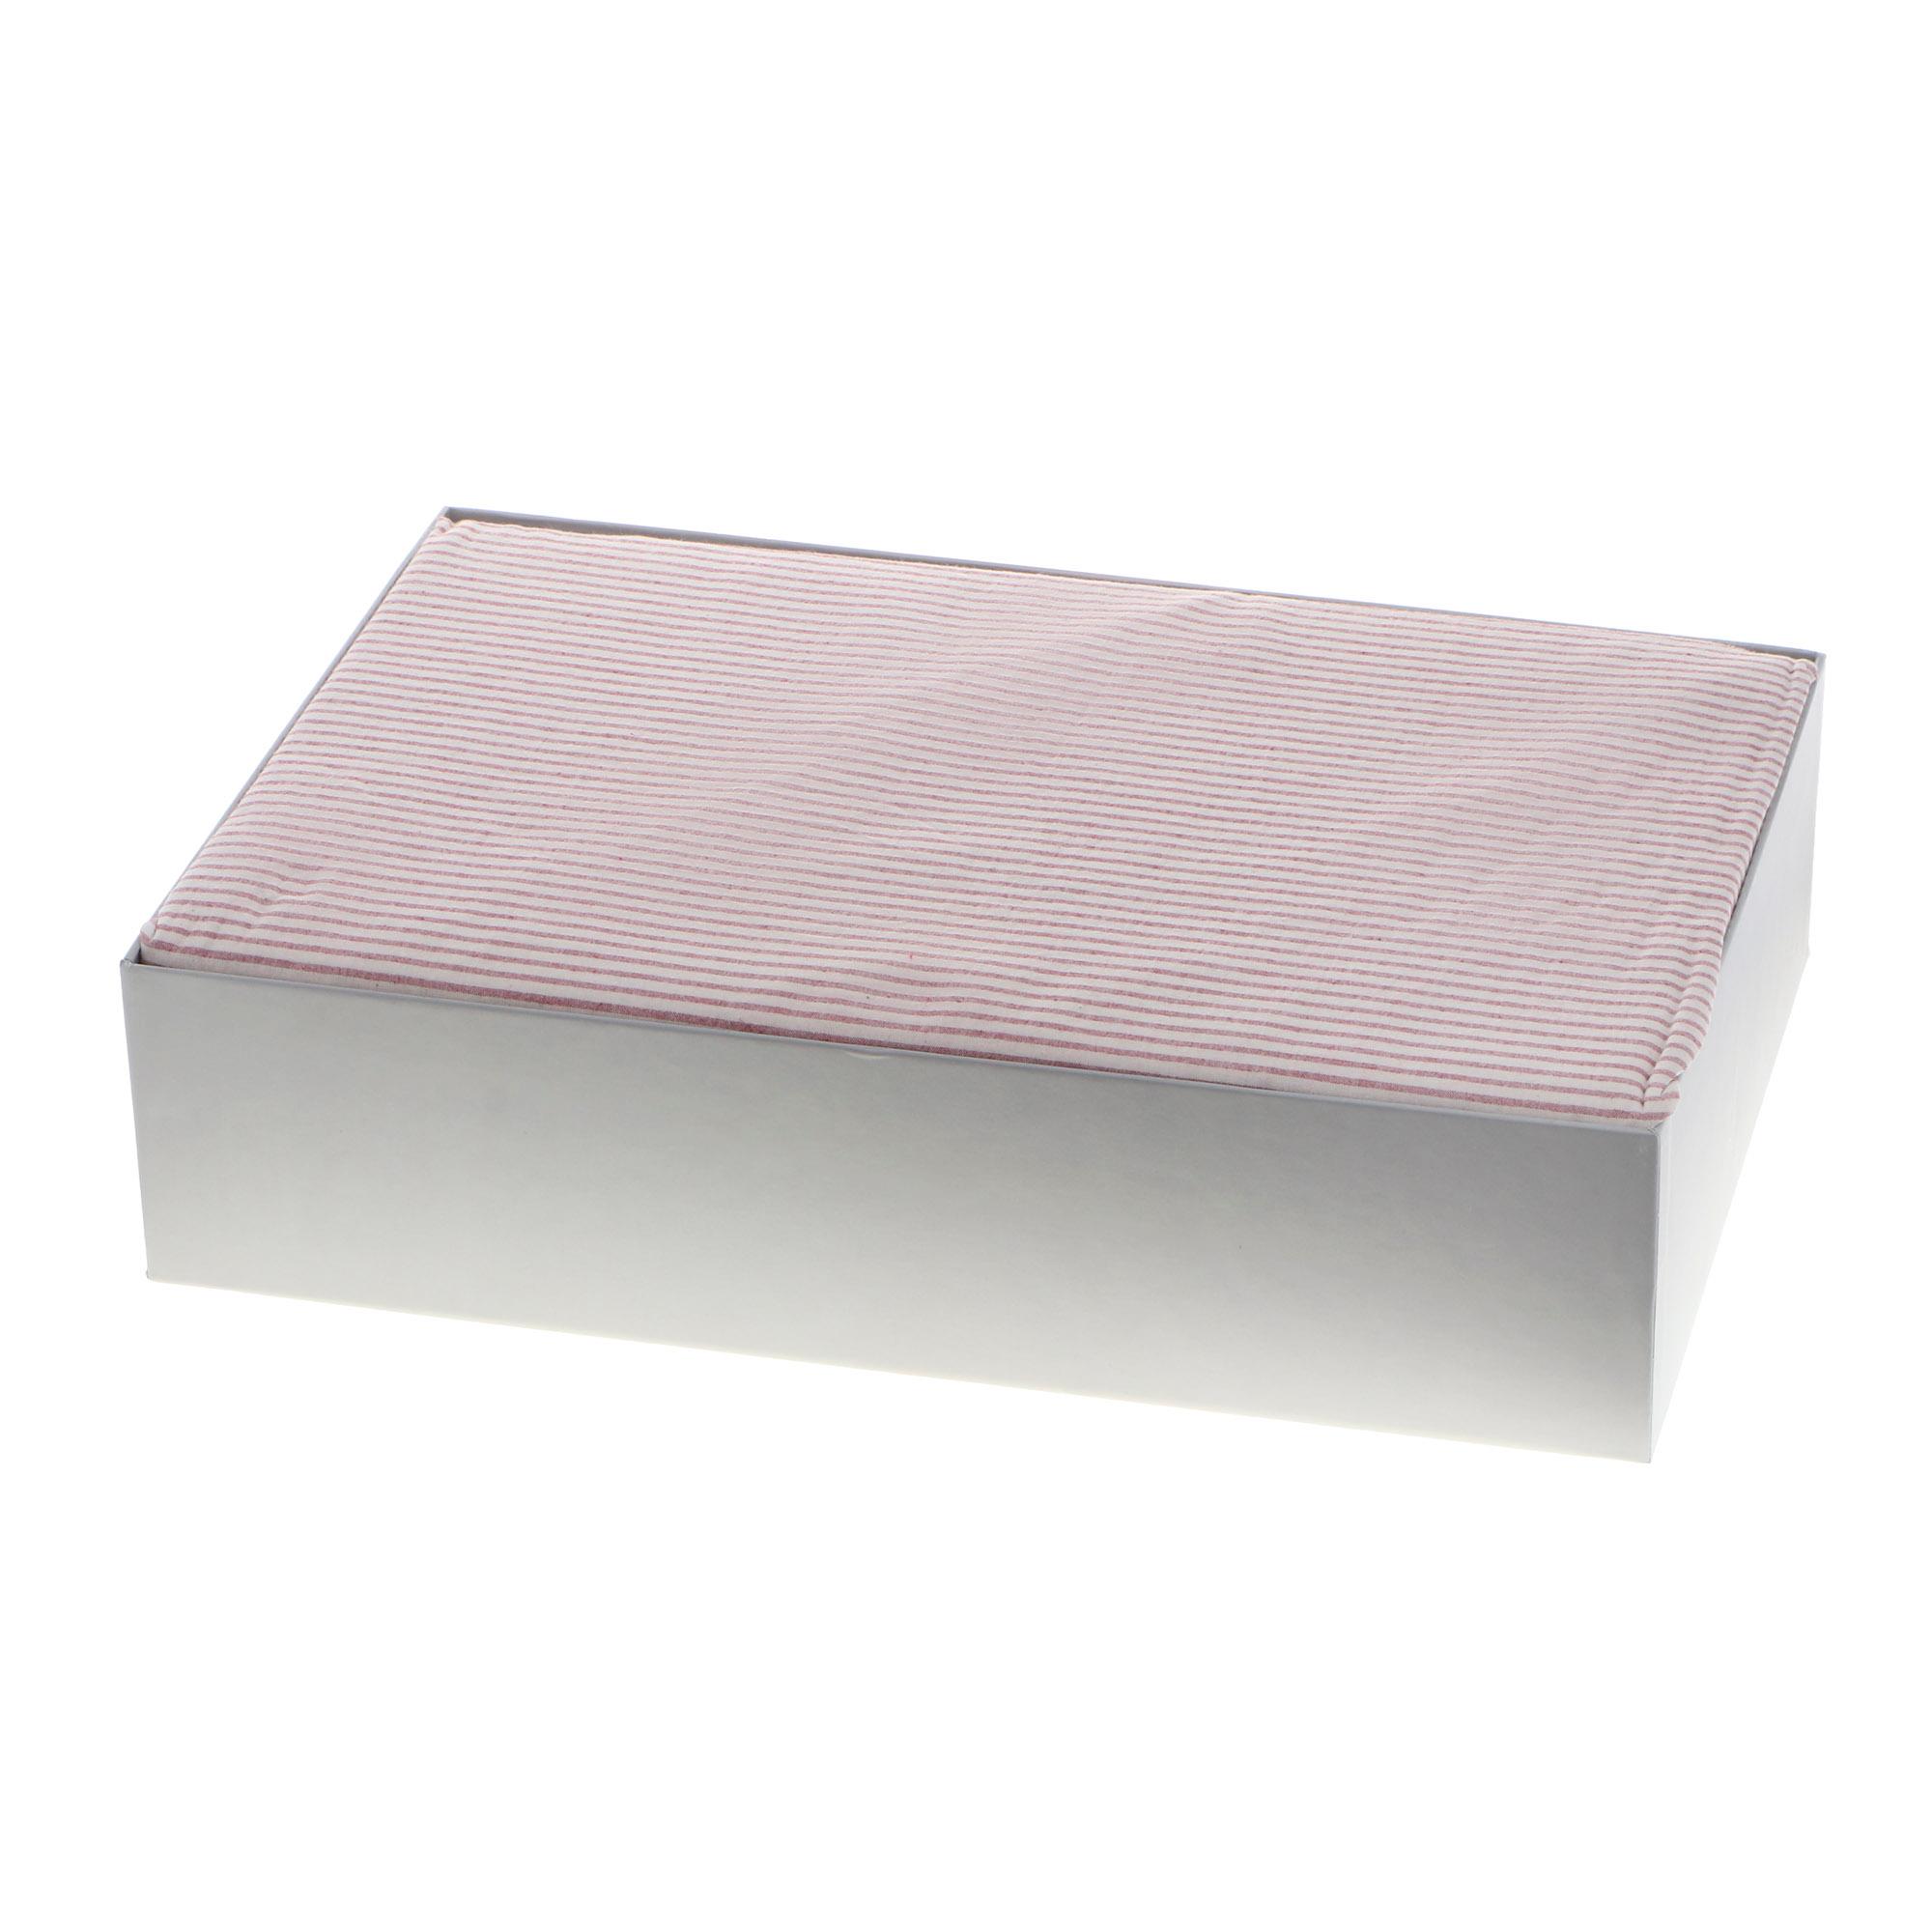 Комплект постельного белья Colors of fashion Crincle семейный сатин розовый